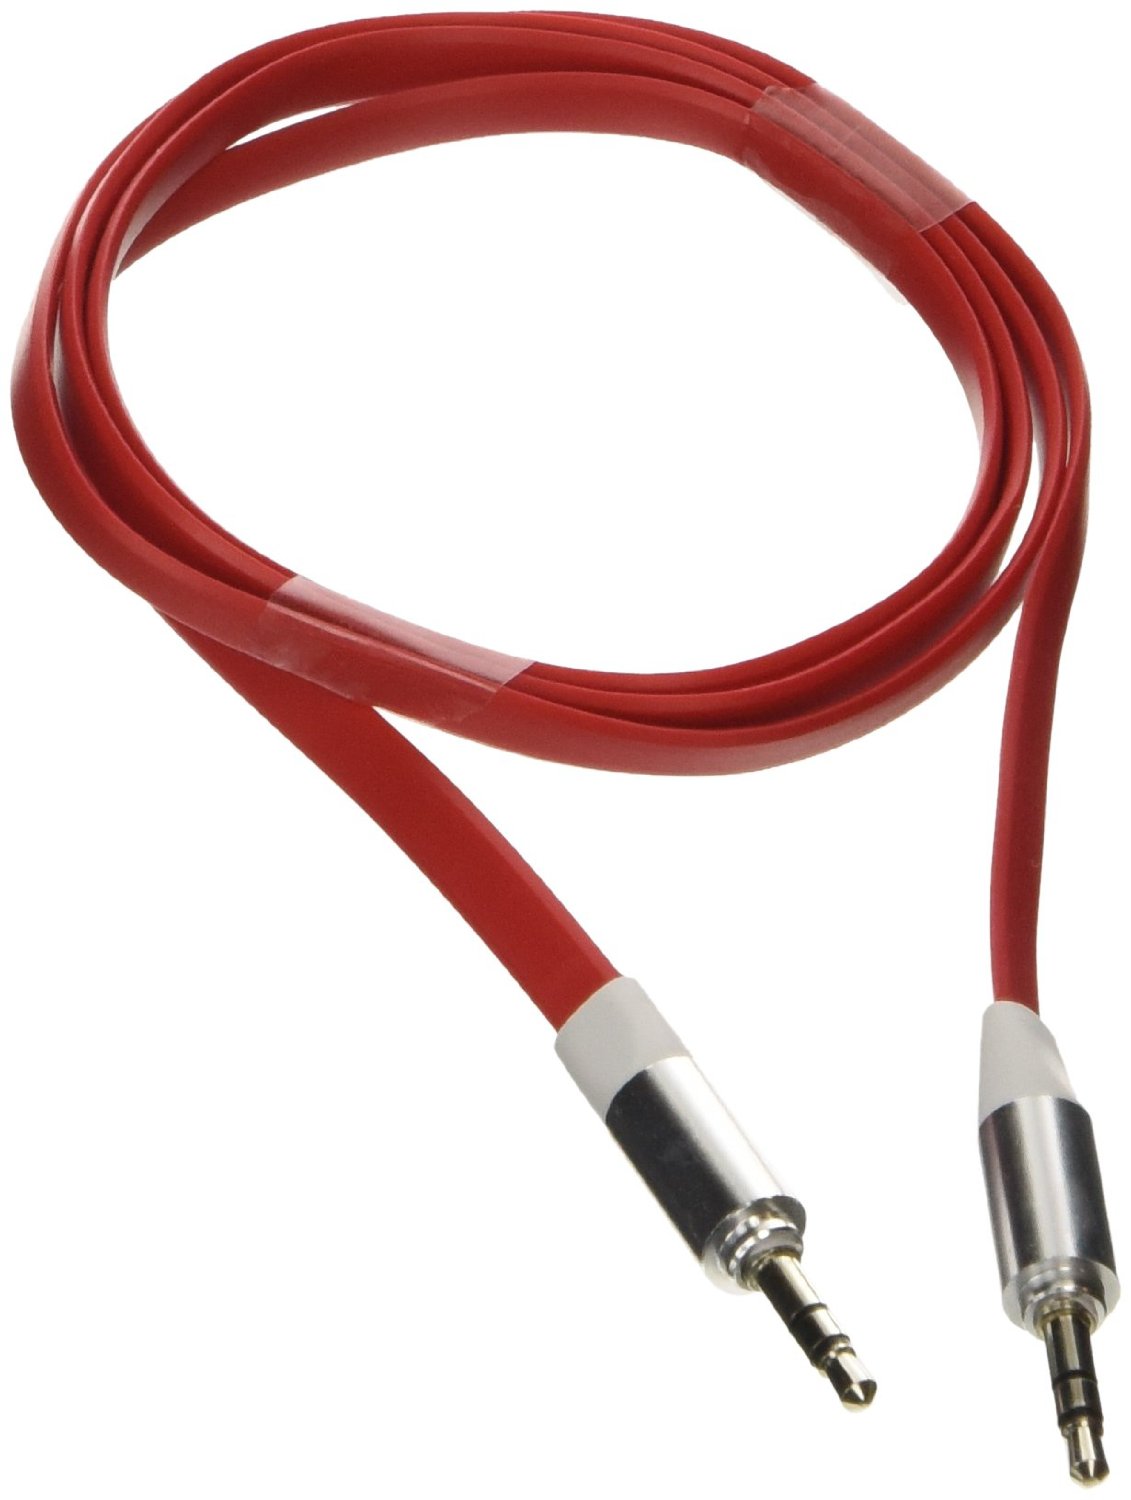 Poppstar 3,5mm Flachband Audio Klinken-Kabel 1m rot für Handy/Smartphone/Tablet